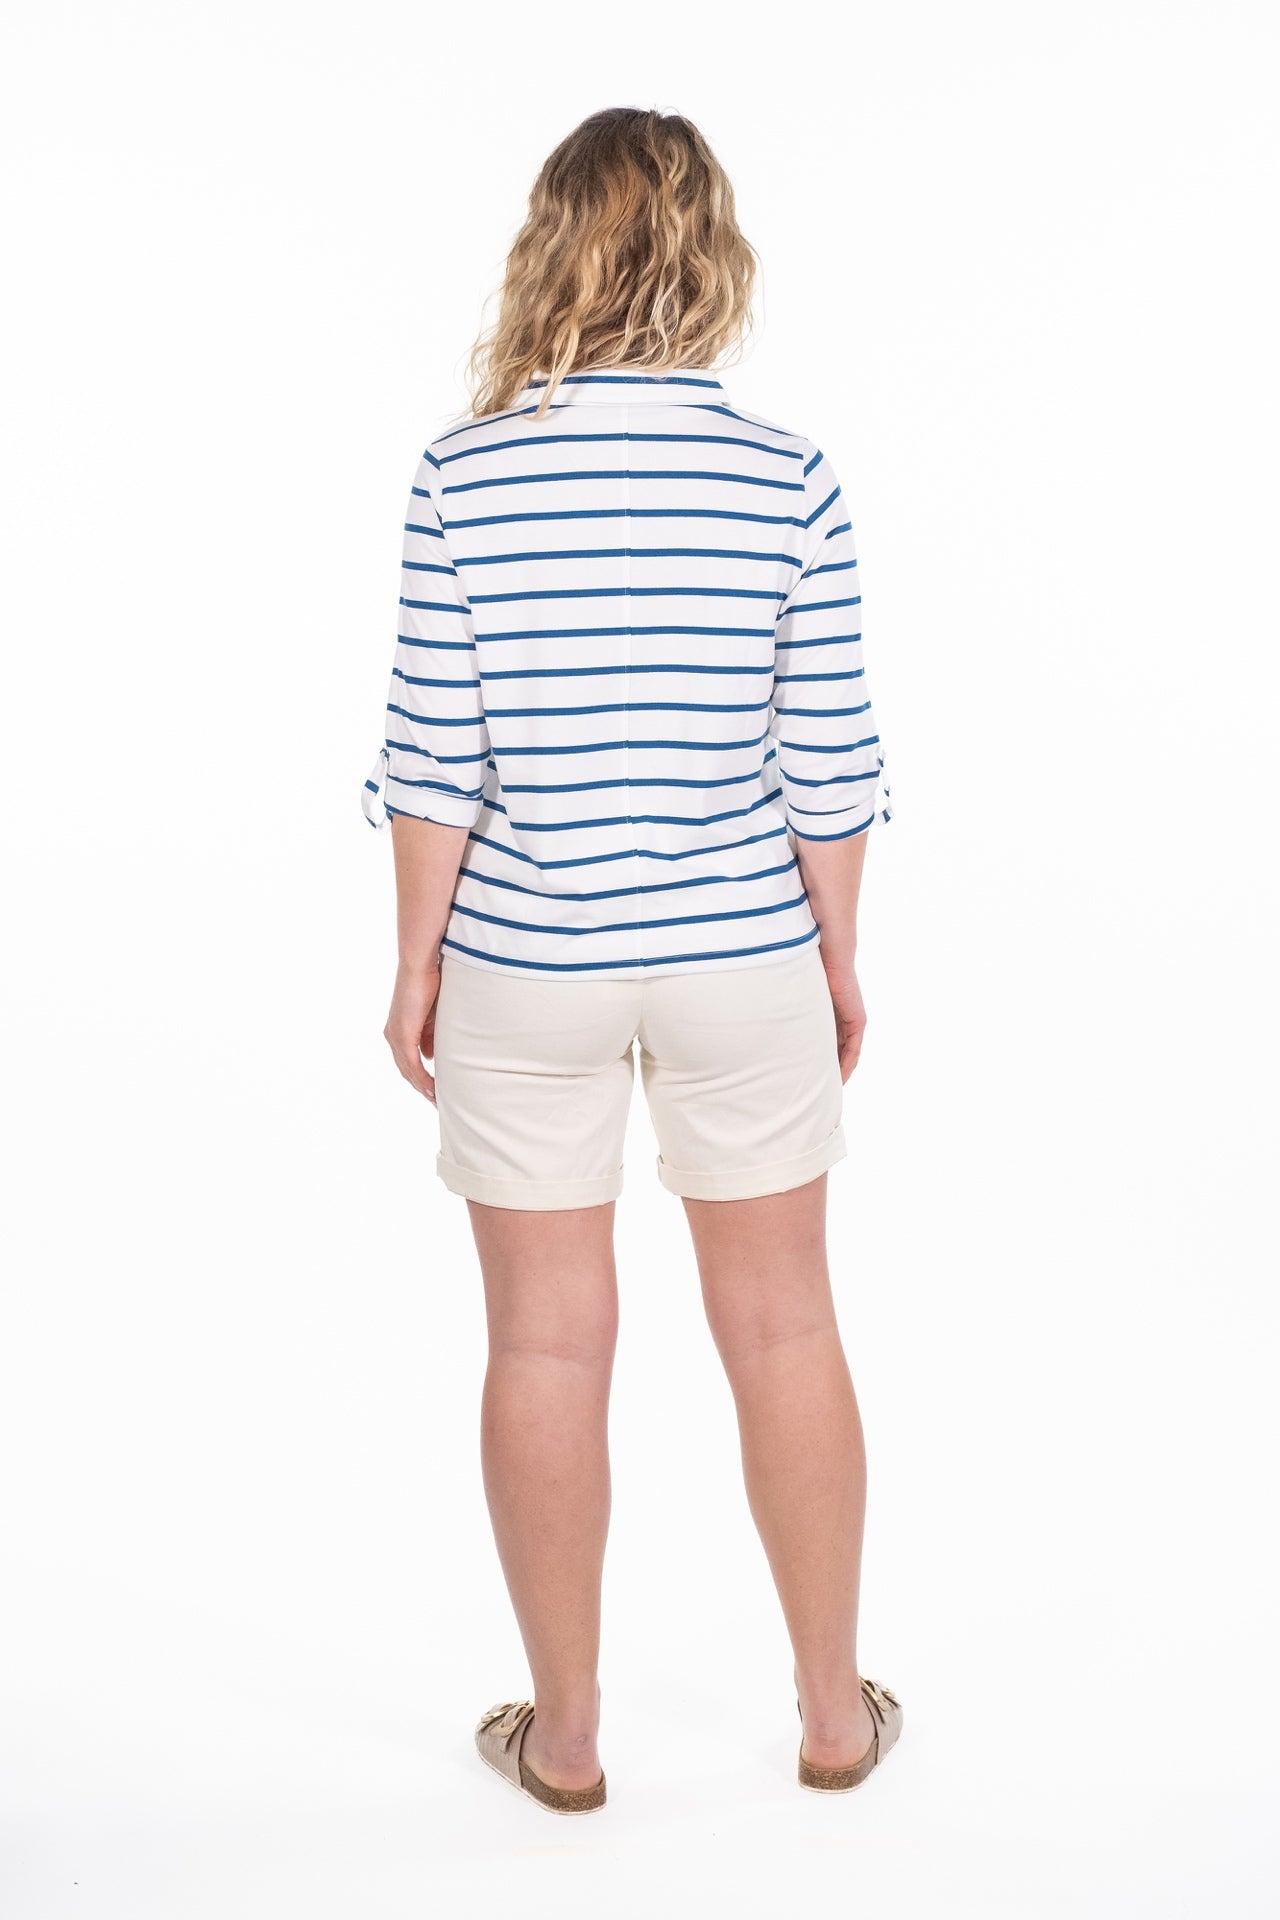 Joni Blue Stripe Jersey Shirt - Rupert and Buckley - Shirts & Tops